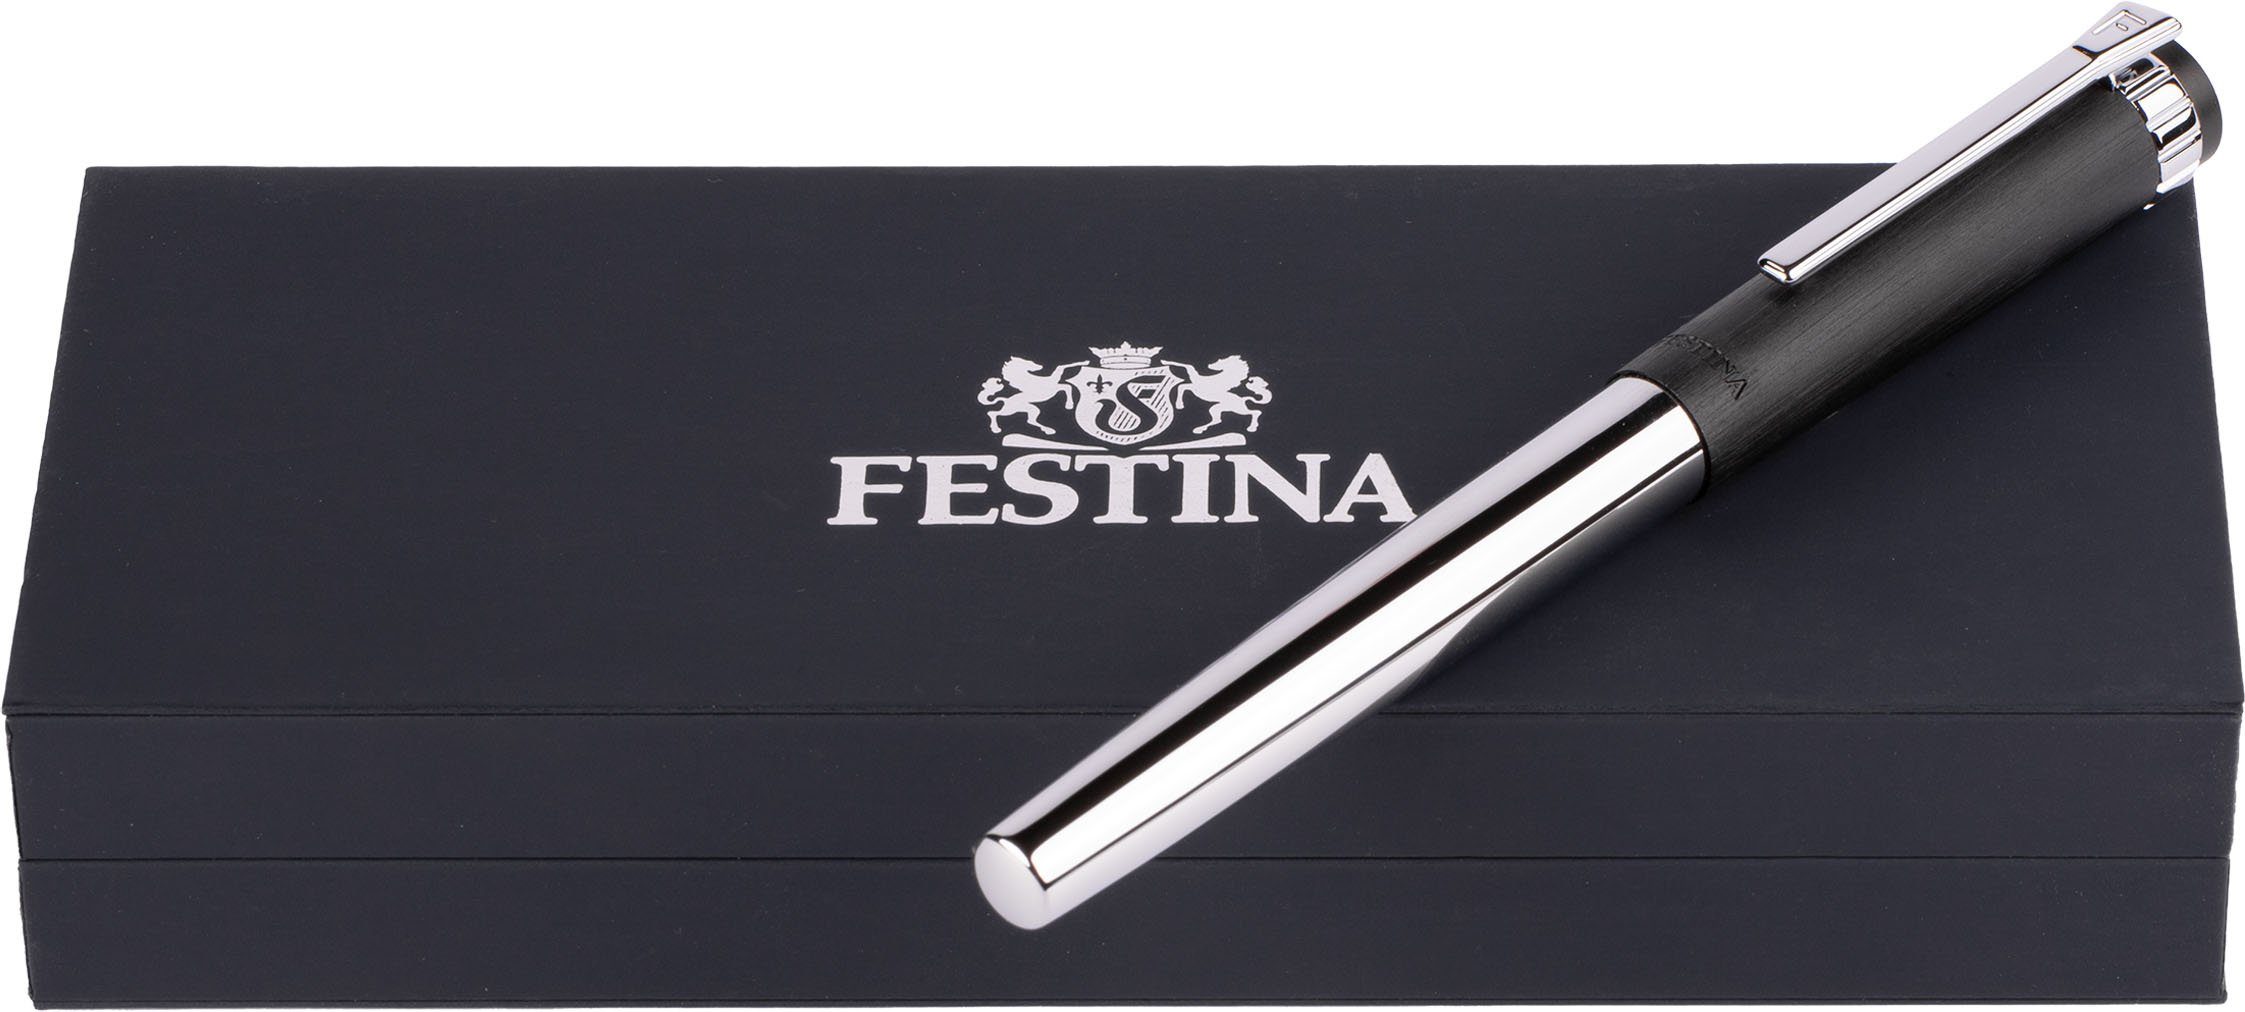 FWS5109/A, inklusive ideal Prestige, als Geschenk Etui, auch Festina Tintenroller